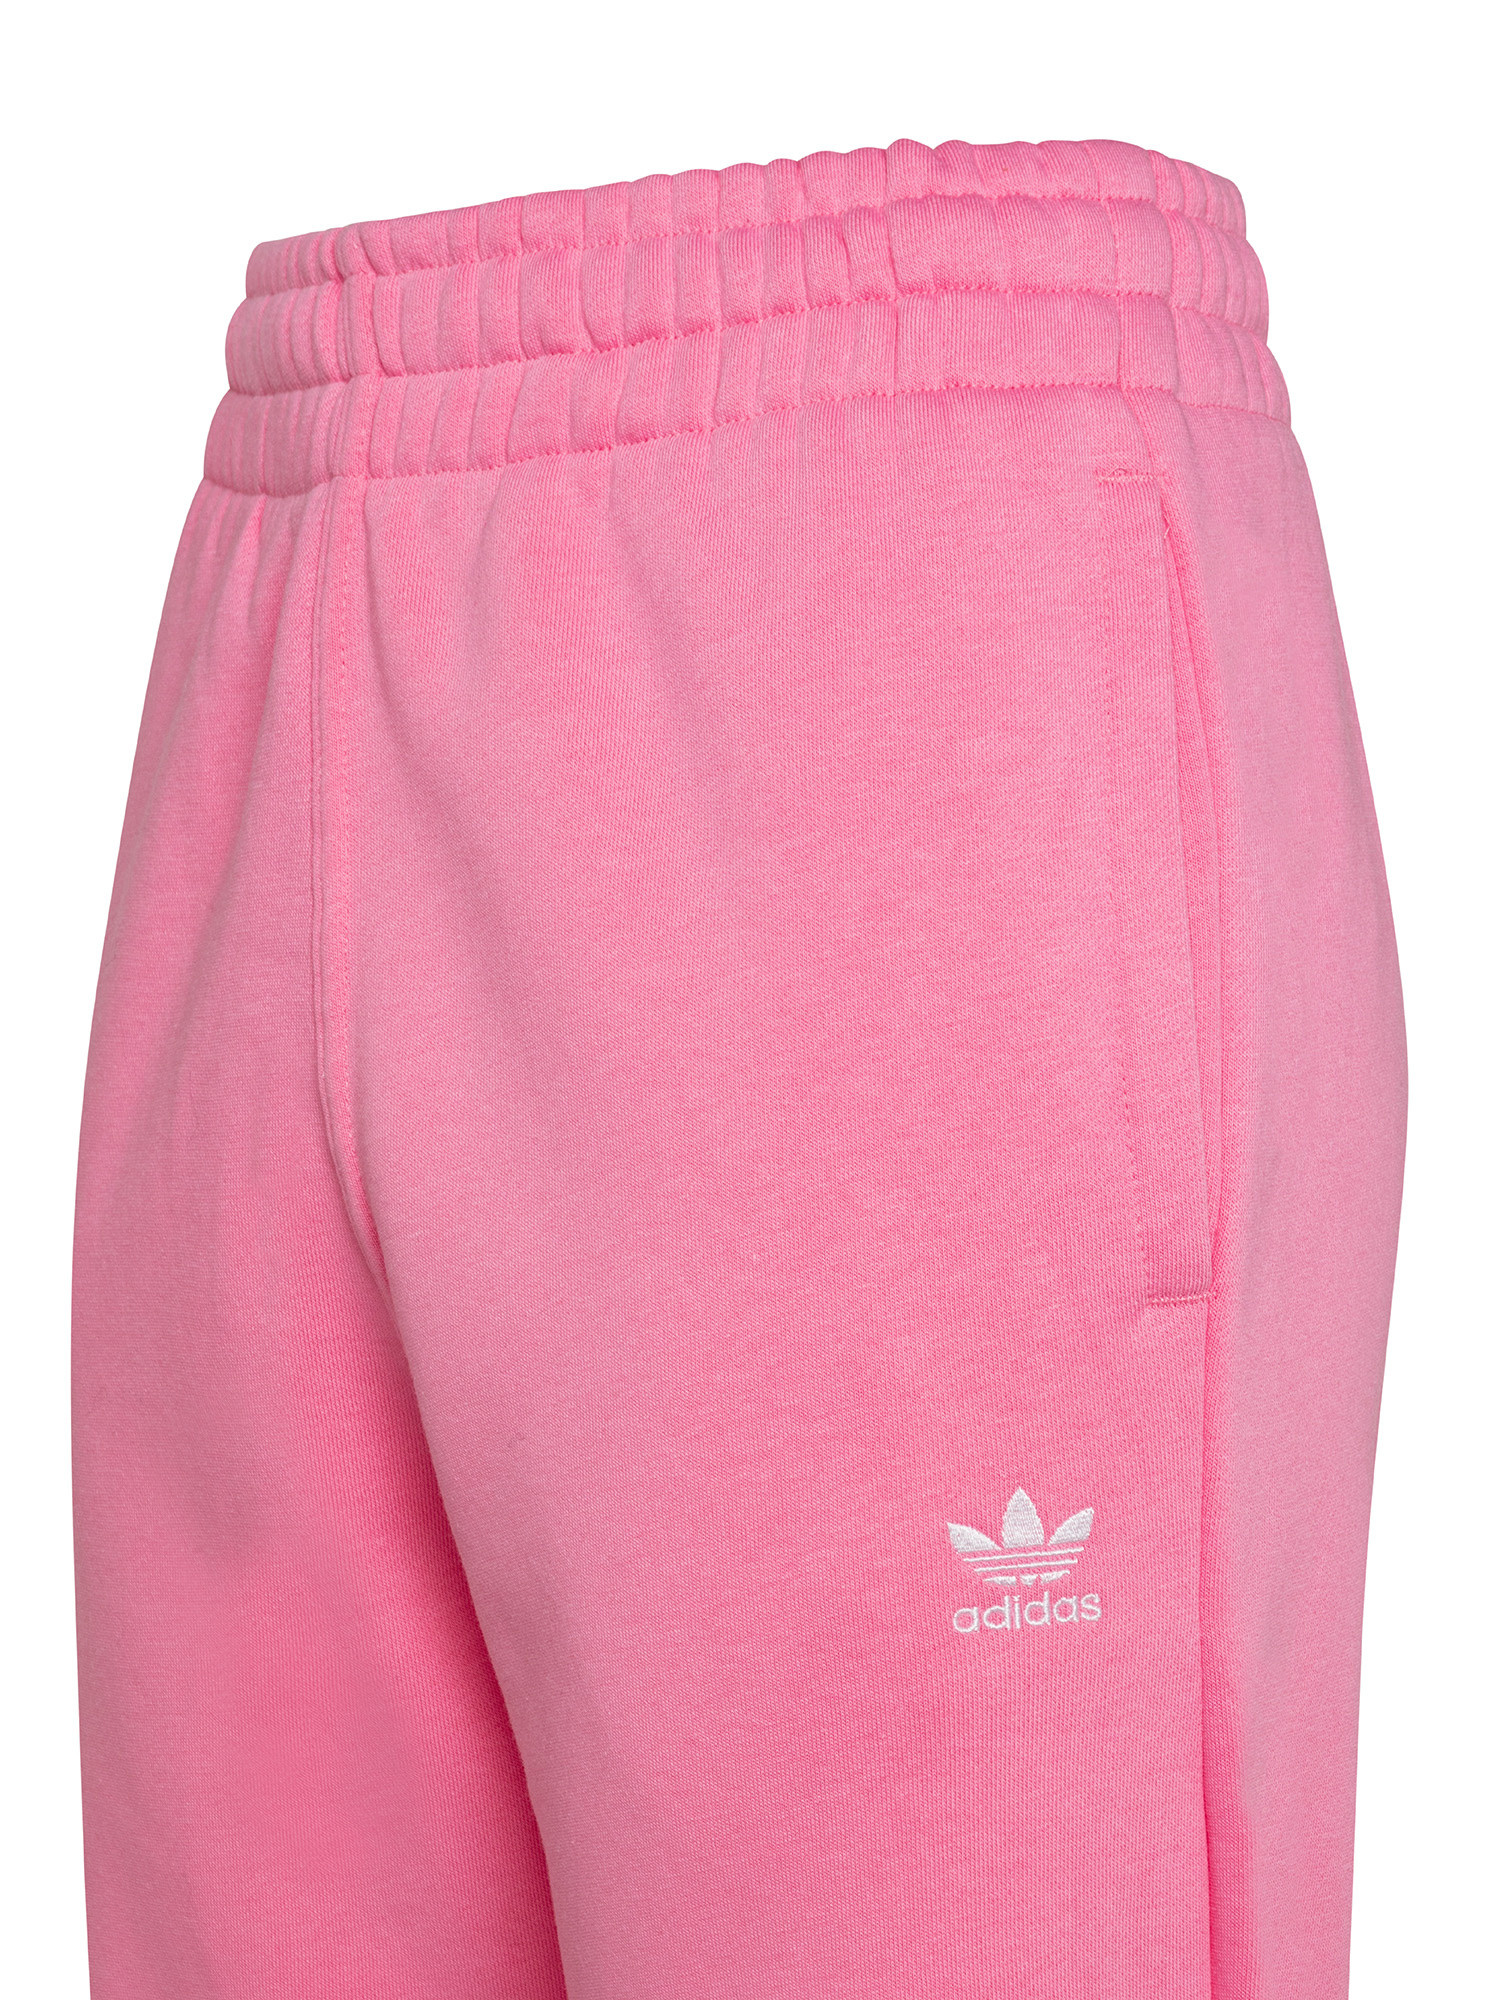 Adidas - Pantaloni adicolor essentials fleece joggers, Rosa, large image number 2